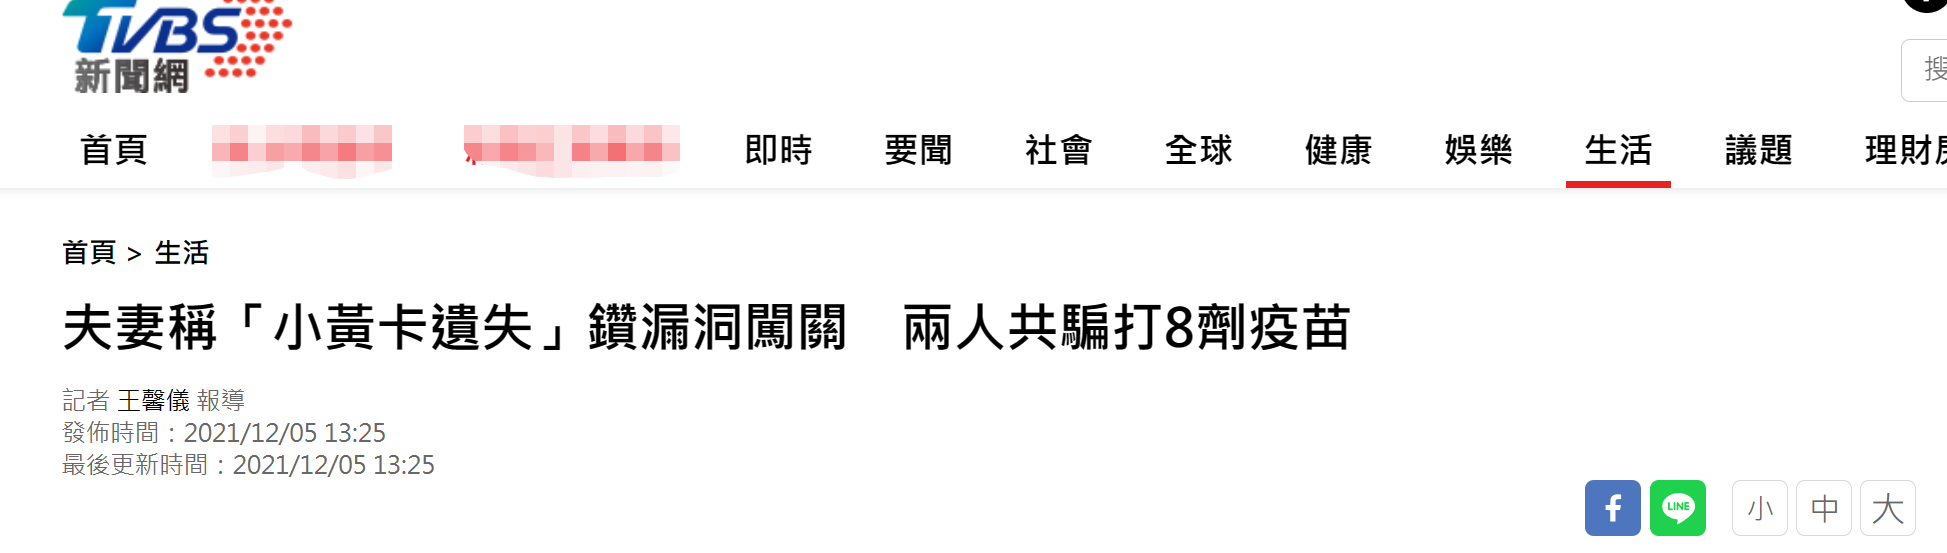 台湾“TVBS新闻网”报道截图